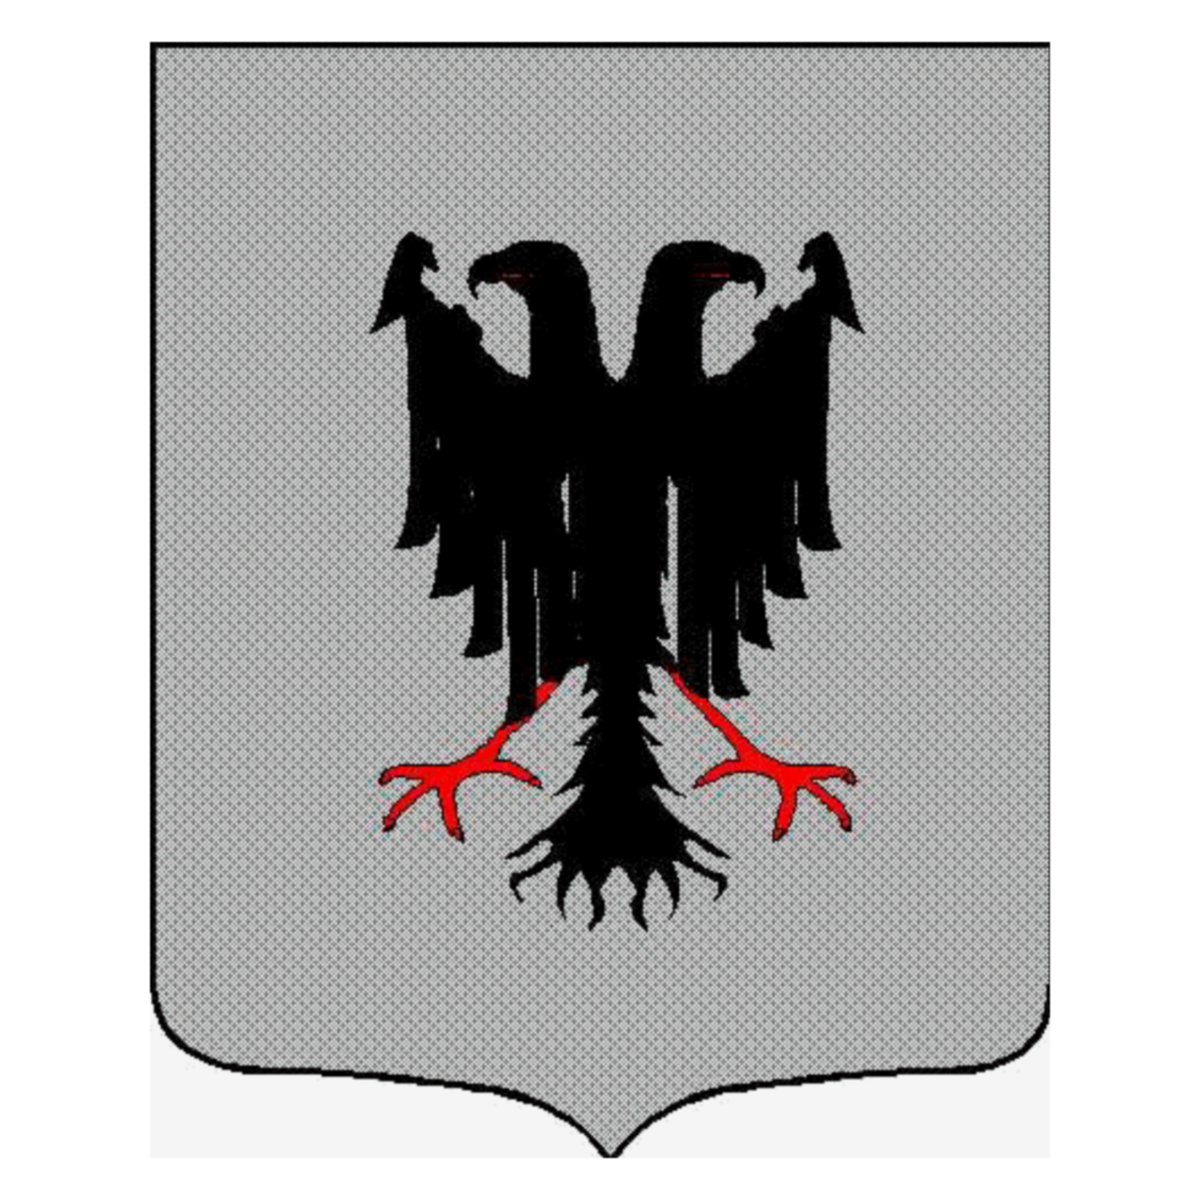 Escudo de la familia Romanini